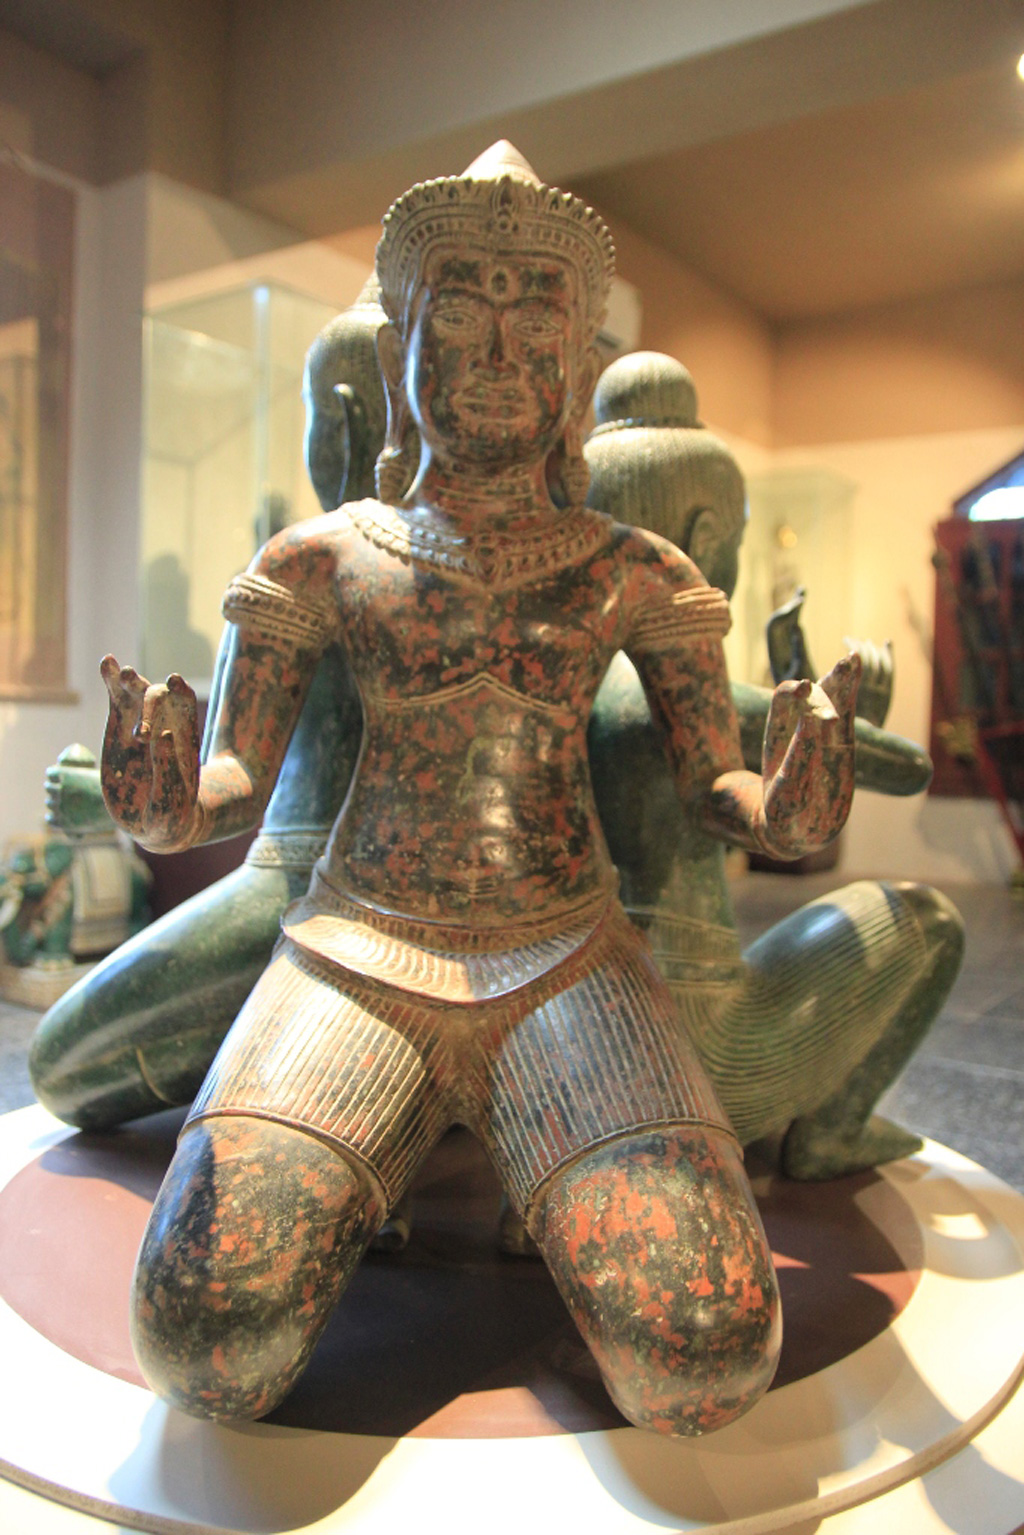 Chiêm ngưỡng kho báu vật Phật giáo trong một ngôi chùa ở Đà Nẵng 4